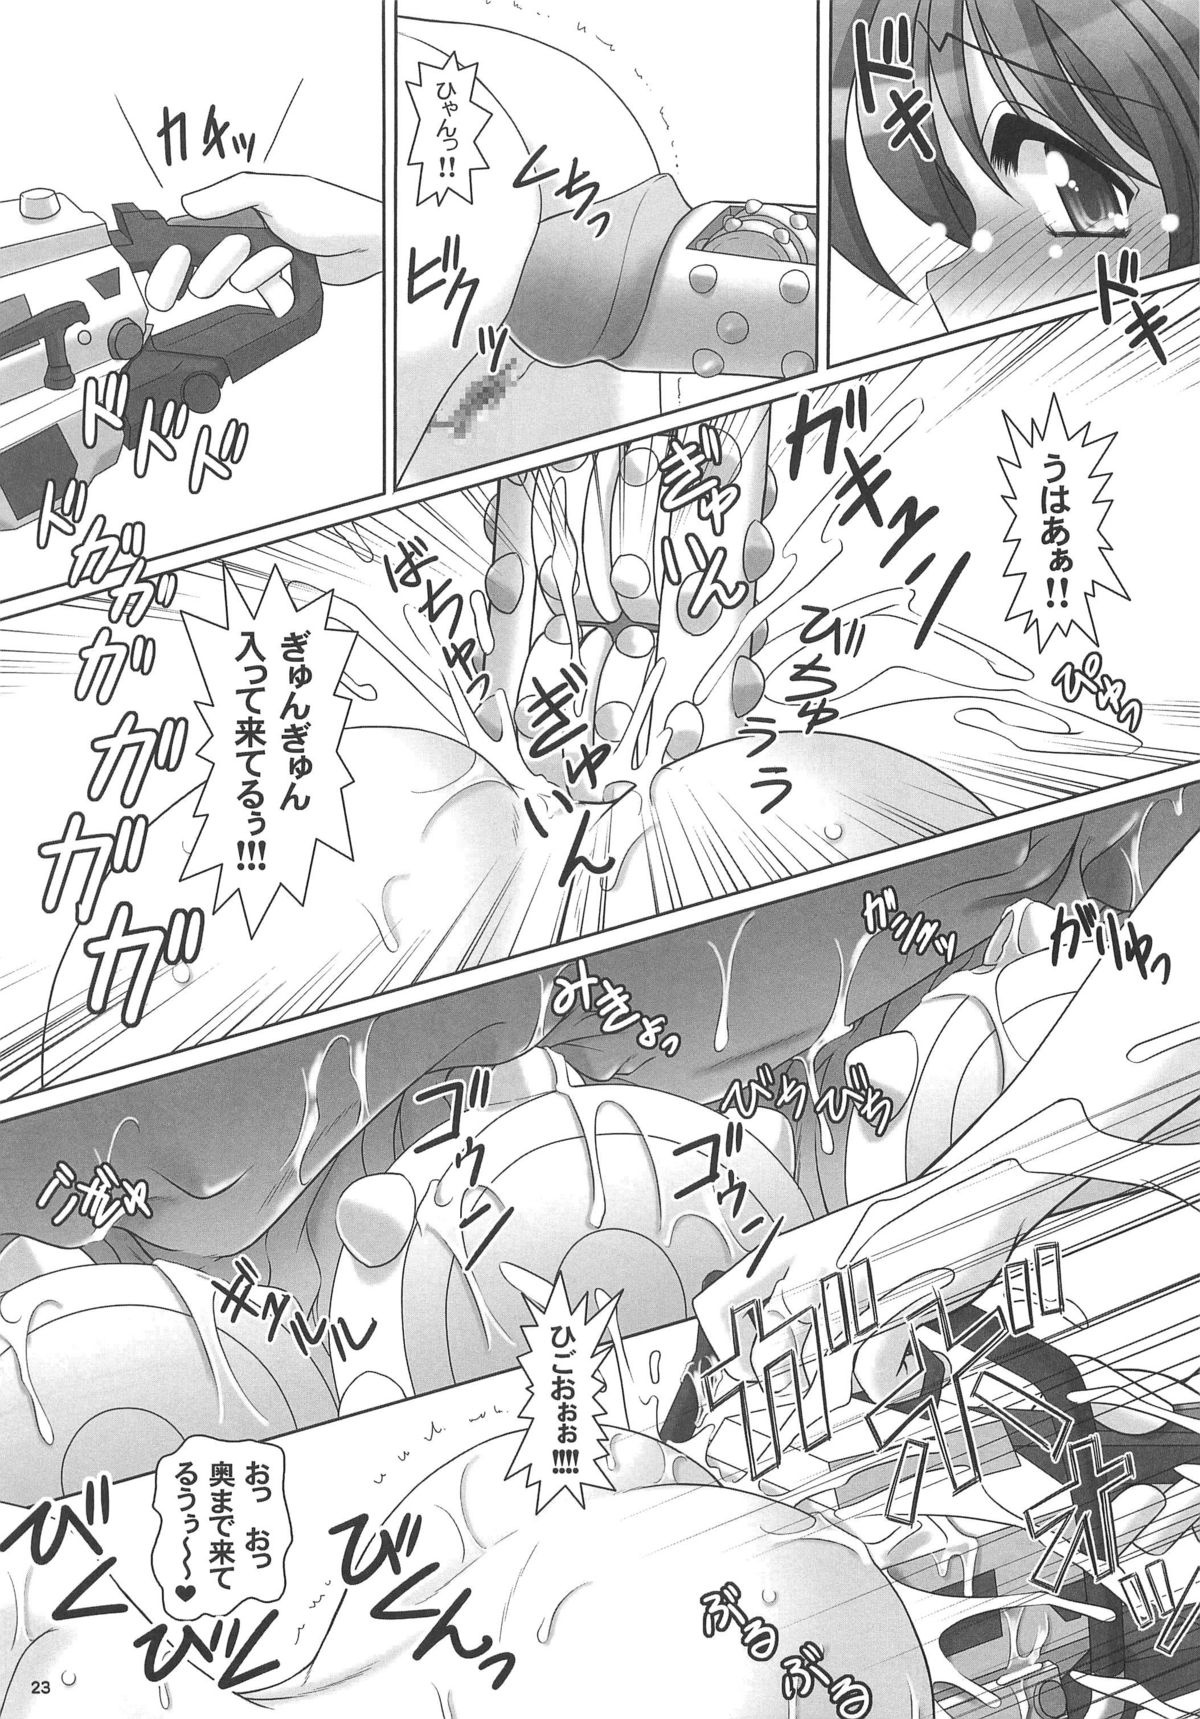 (C77) [KNOCKOUT (USSO)] Ana Centimeter 4 (Shijou Saikyou no Deshi Ken&#039;ichi / History Strongest Disciple Kenichi) (C77) [KNOCKOUT (USSO)] アナセンチ4 (史上最強の弟子ケンイチ)